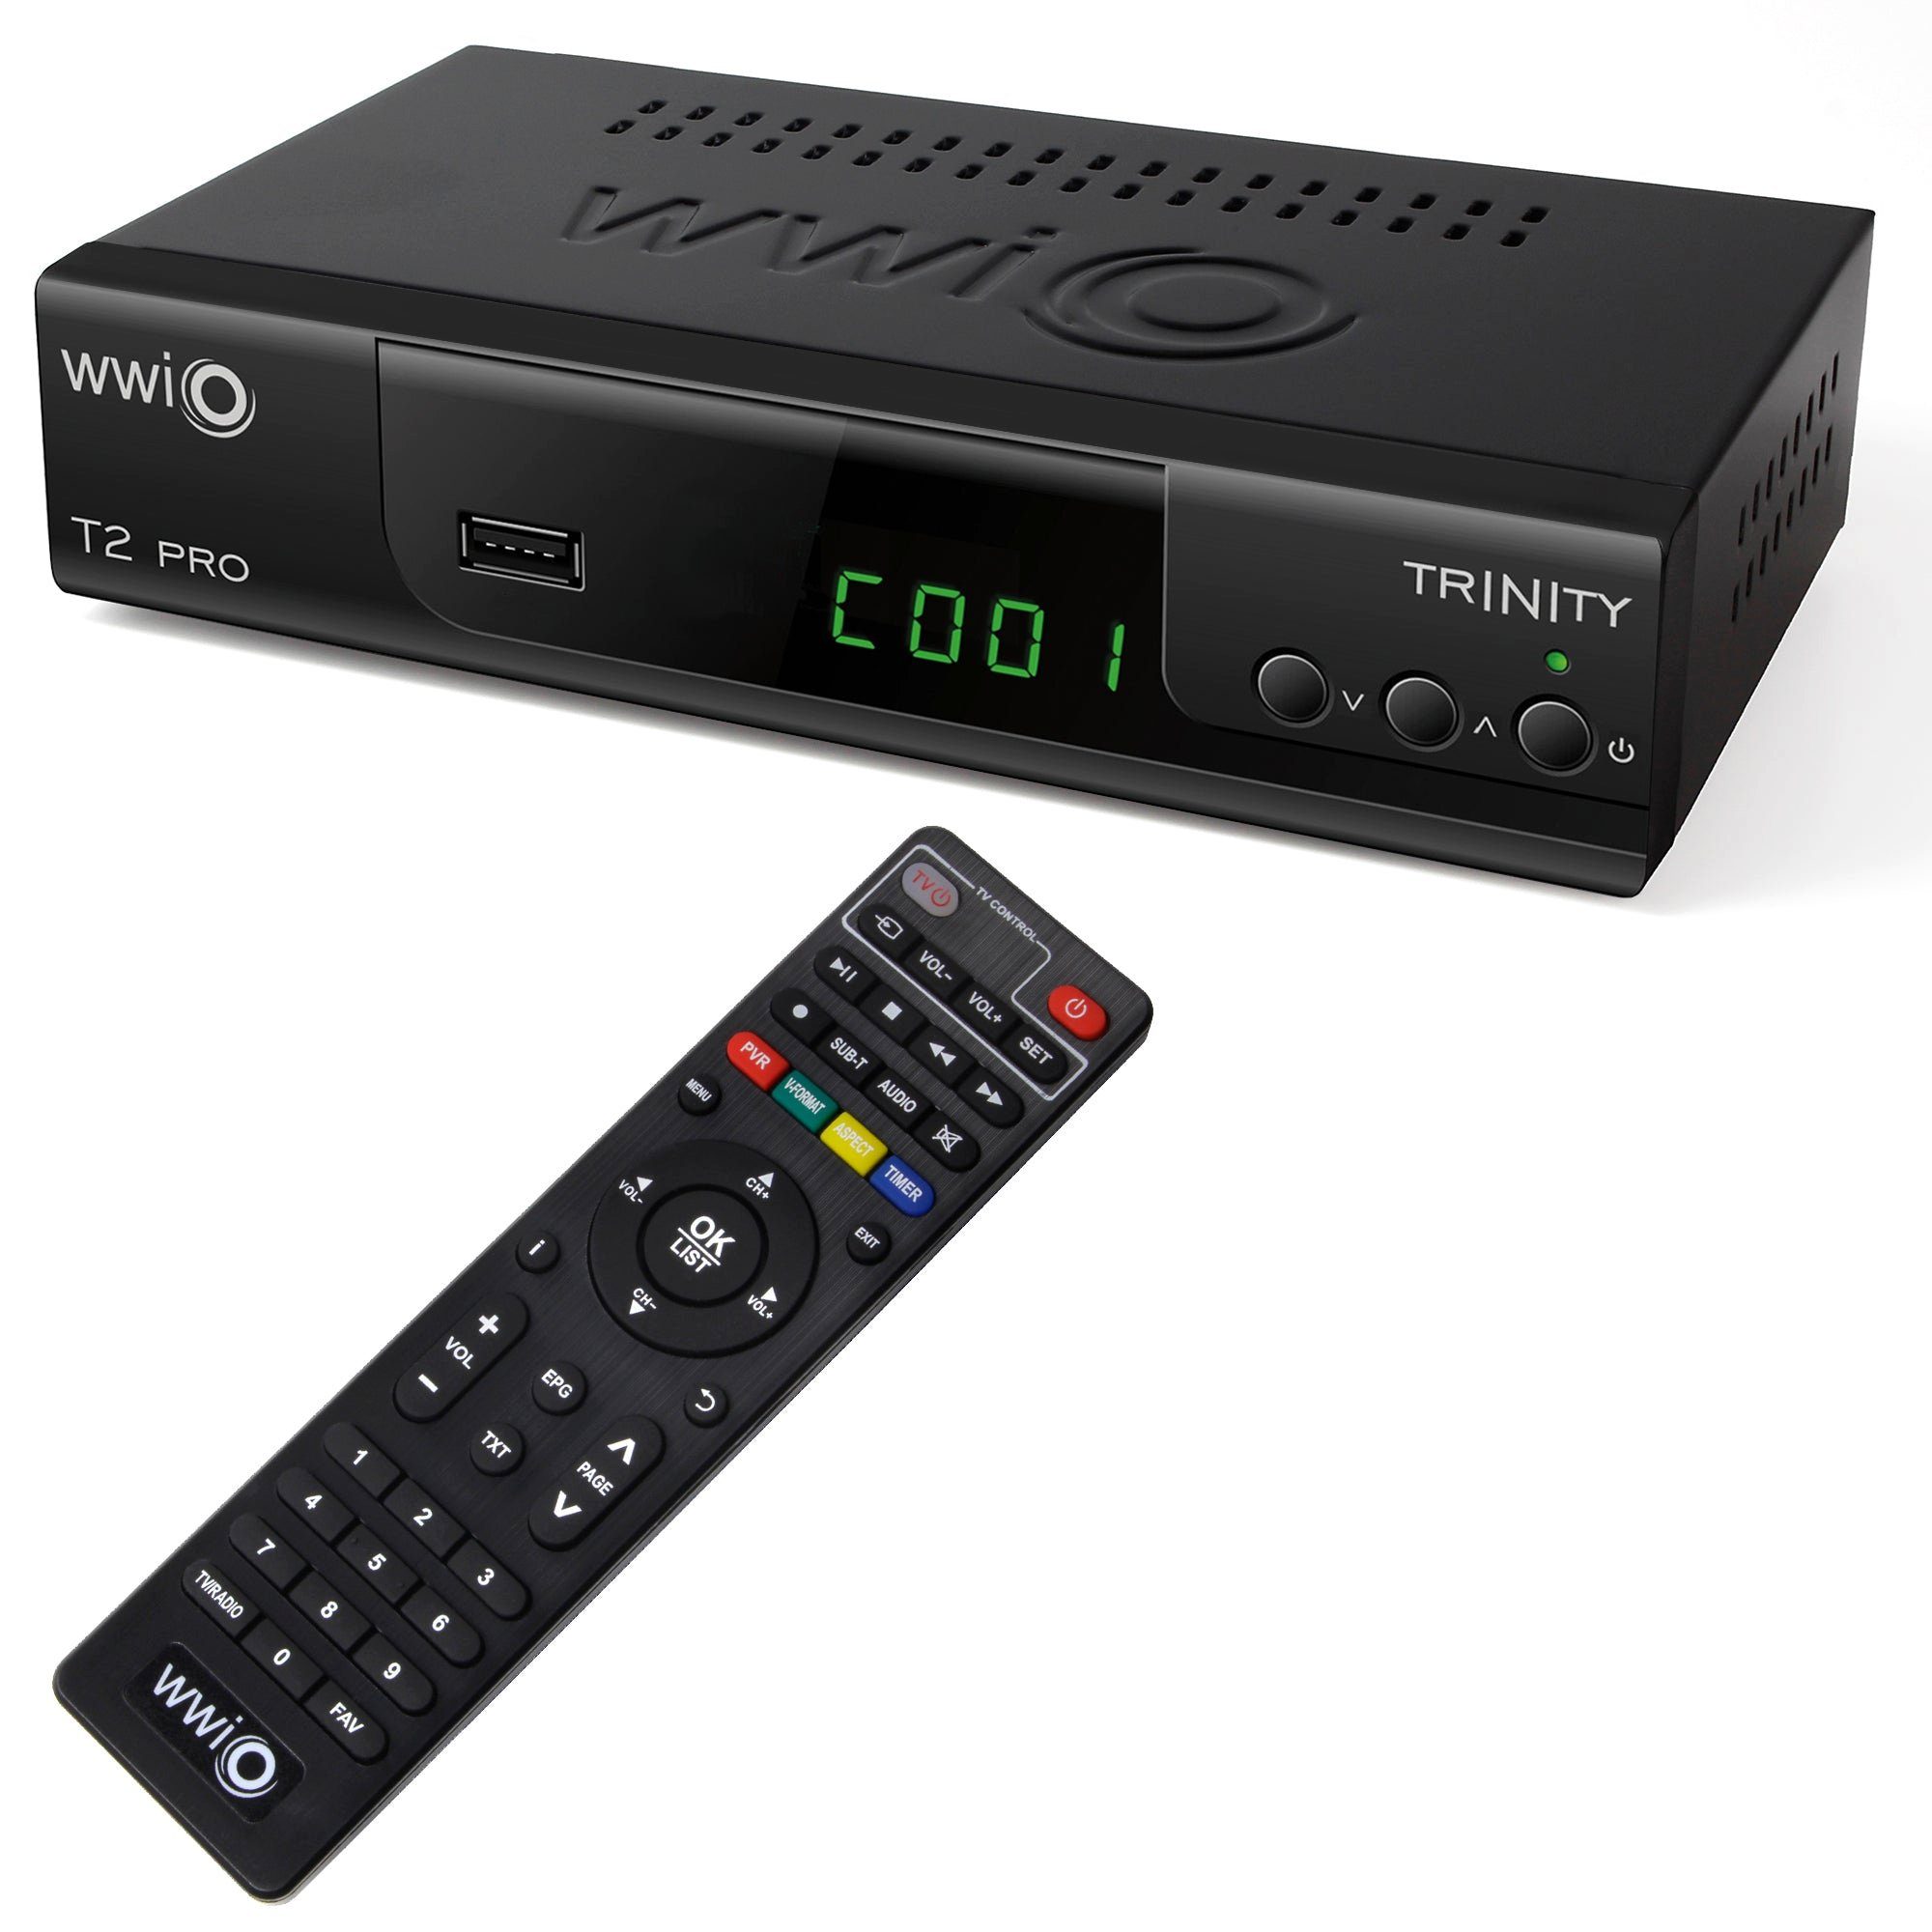 WWIO WWIO Trinity T2 PRO with 2-in-1 RCU DVB-T2, FullHD, USB, HDMI, PVR DVB-T2 HD Receiver